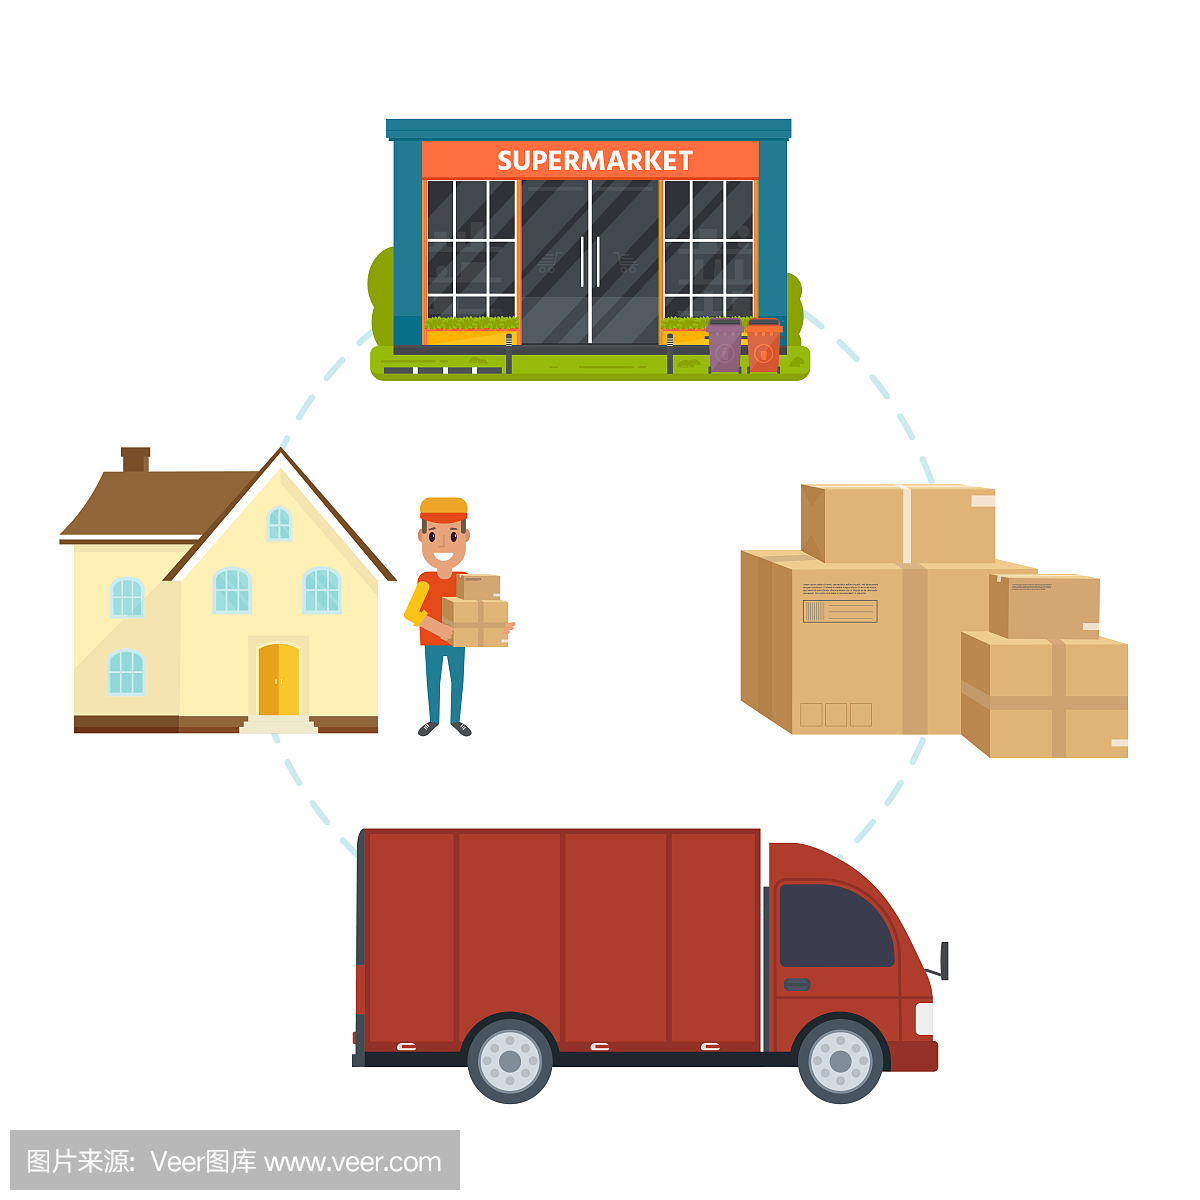 物流配送服务集:卡车、微笑快递、快递包、货车、网上超市、网店。